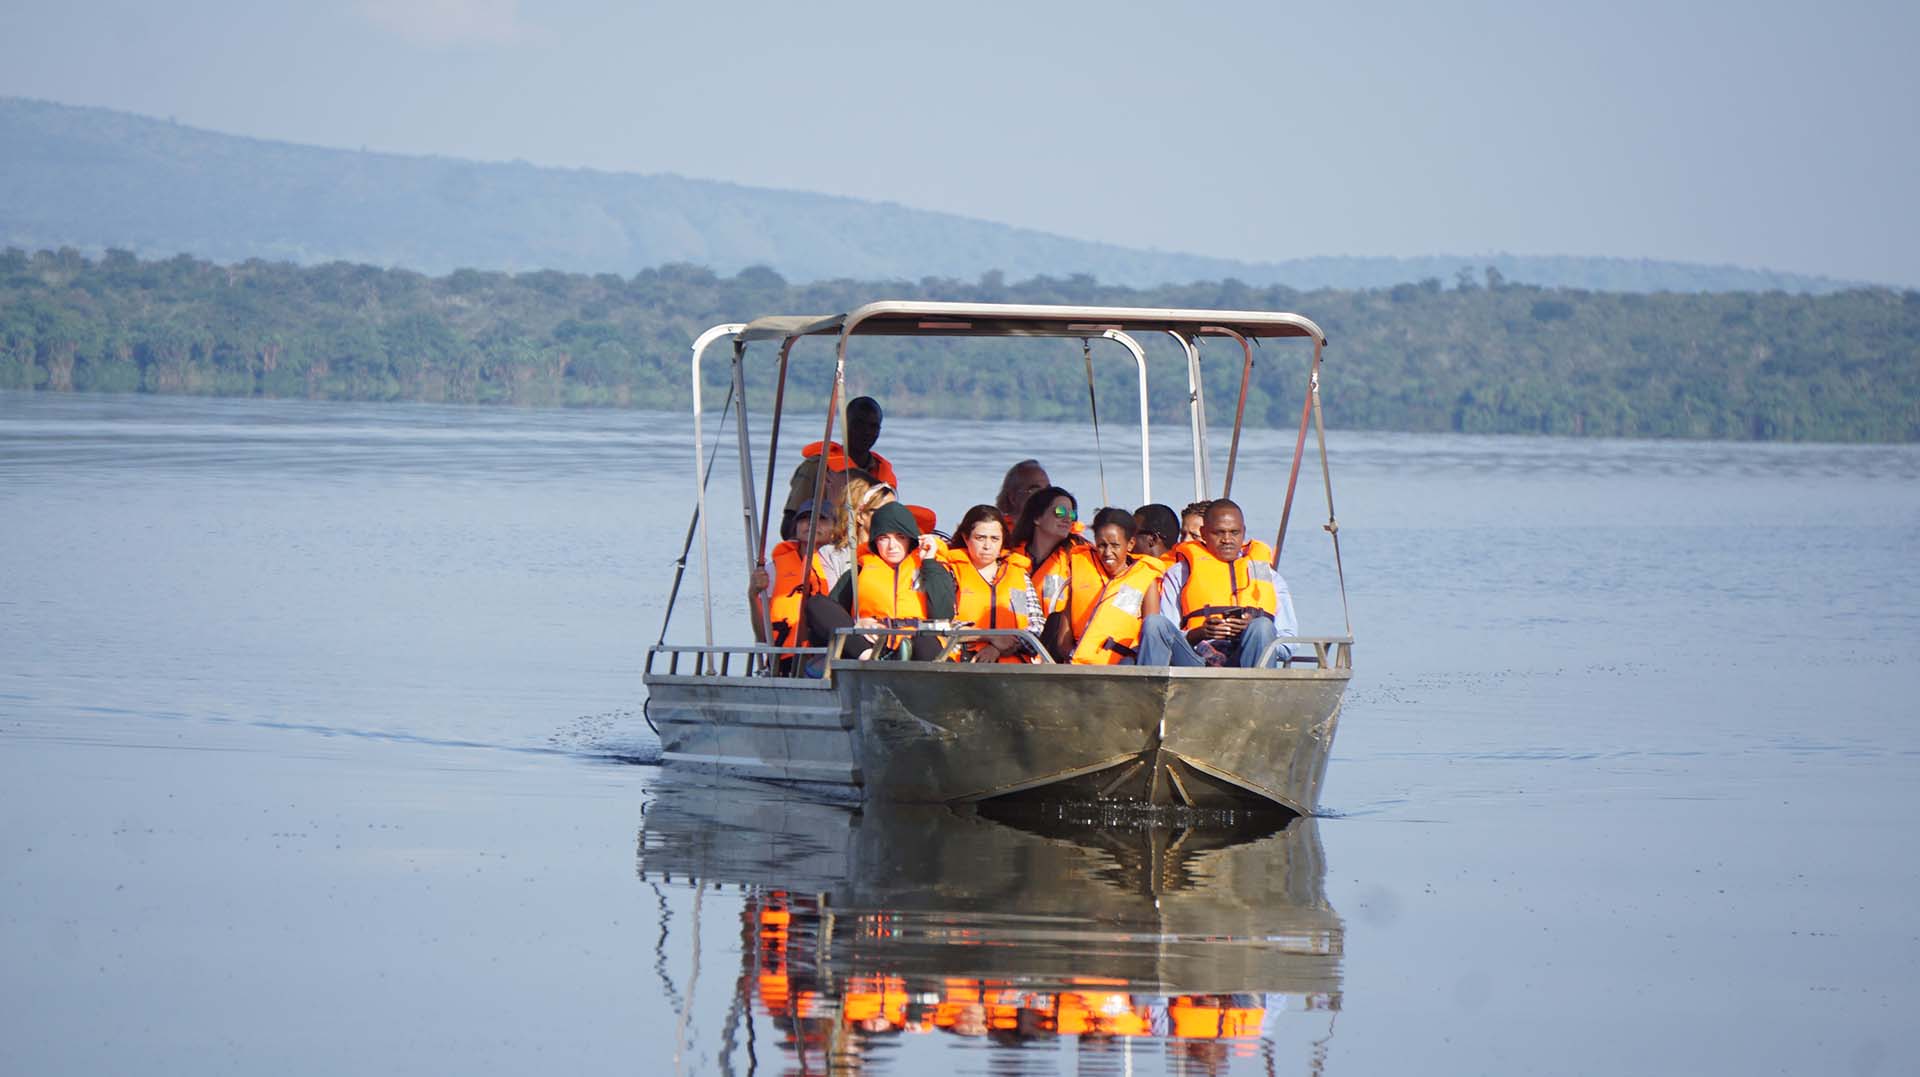 Tourists taking a boat trip on Kivu Lake, Rwanda